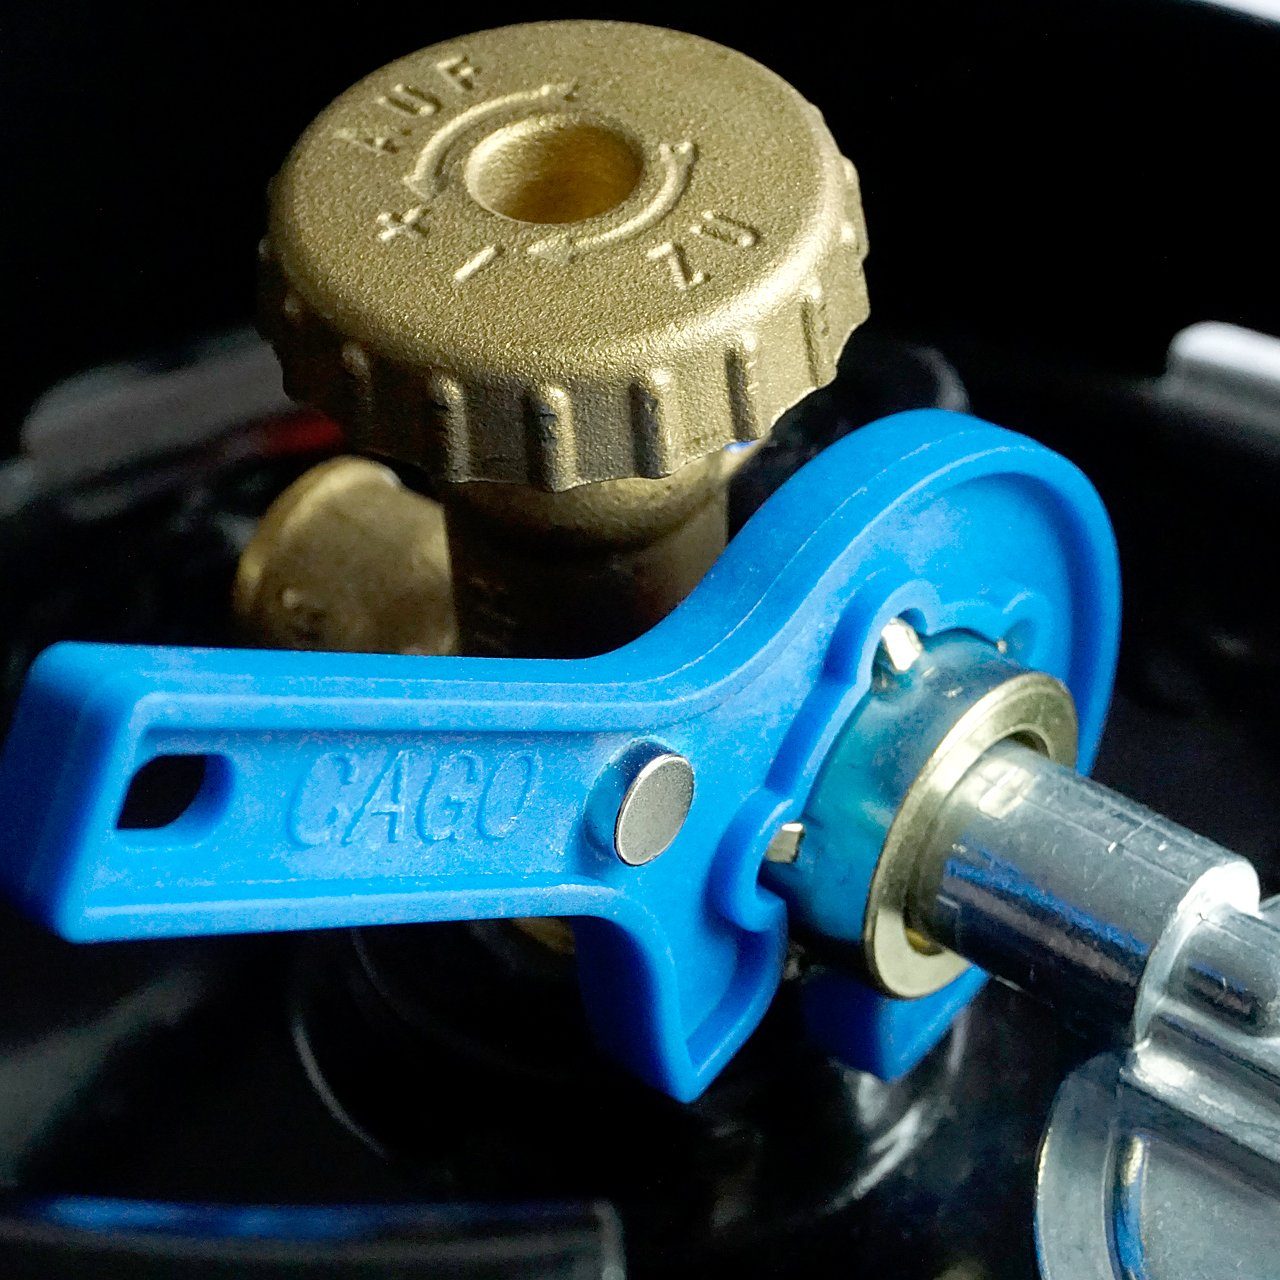 Magnet KLF mit Gasflaschen-Schlüssel Reglerlöser Maulschlüssel, Propangas-Flaschen Camping BlueCraft